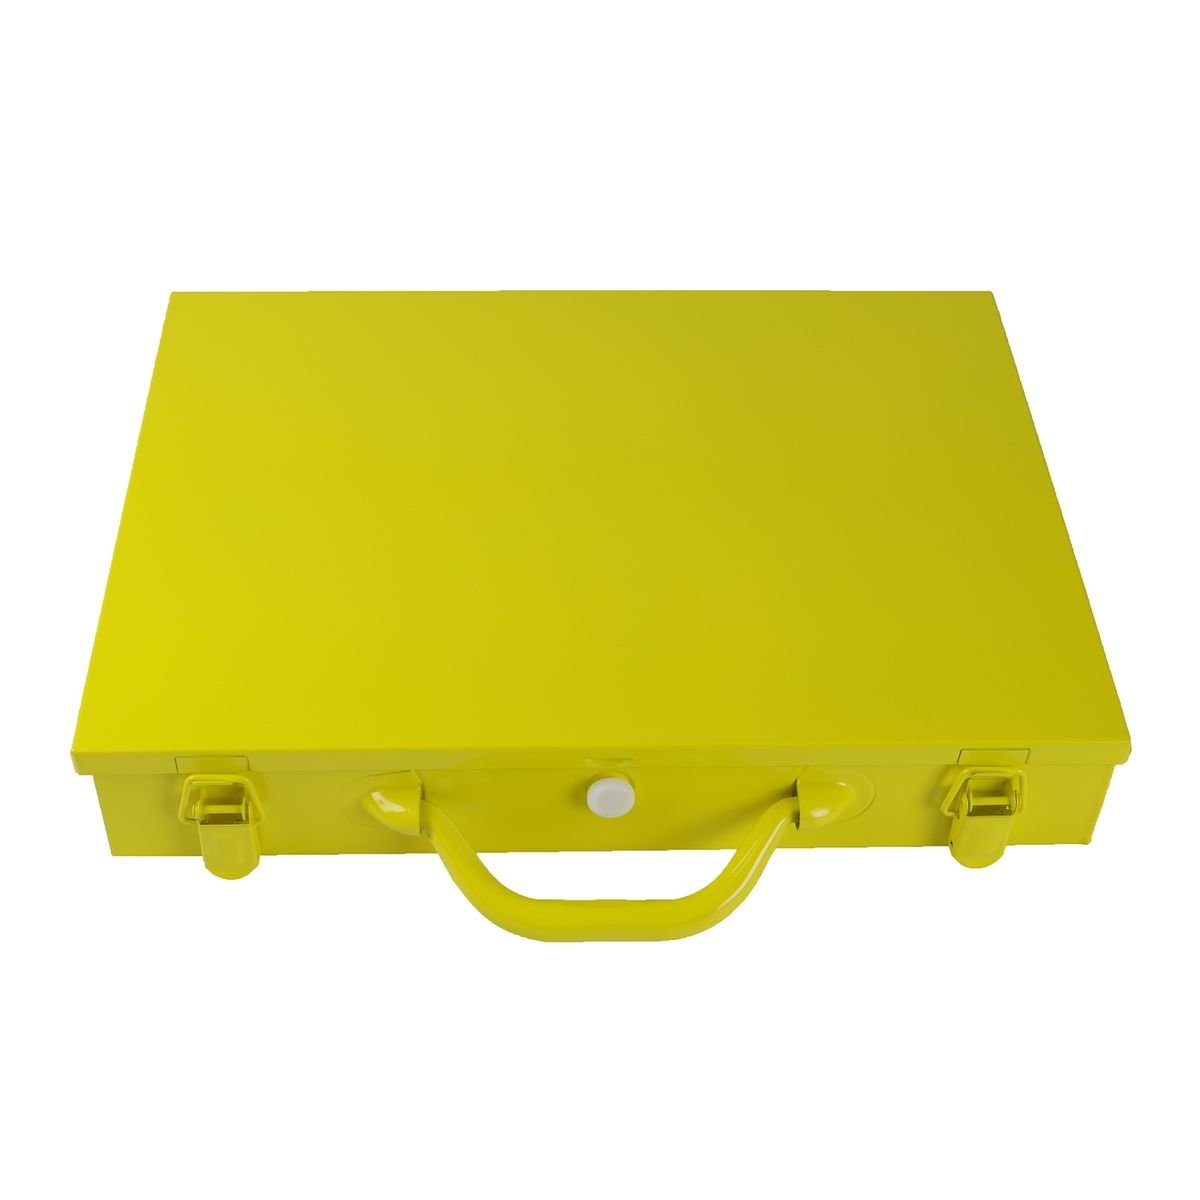 Starke Werkzeugbox gelber Sortimentskasten 28x39x7cm aus Metall 14Fächer Sortimentskoffer